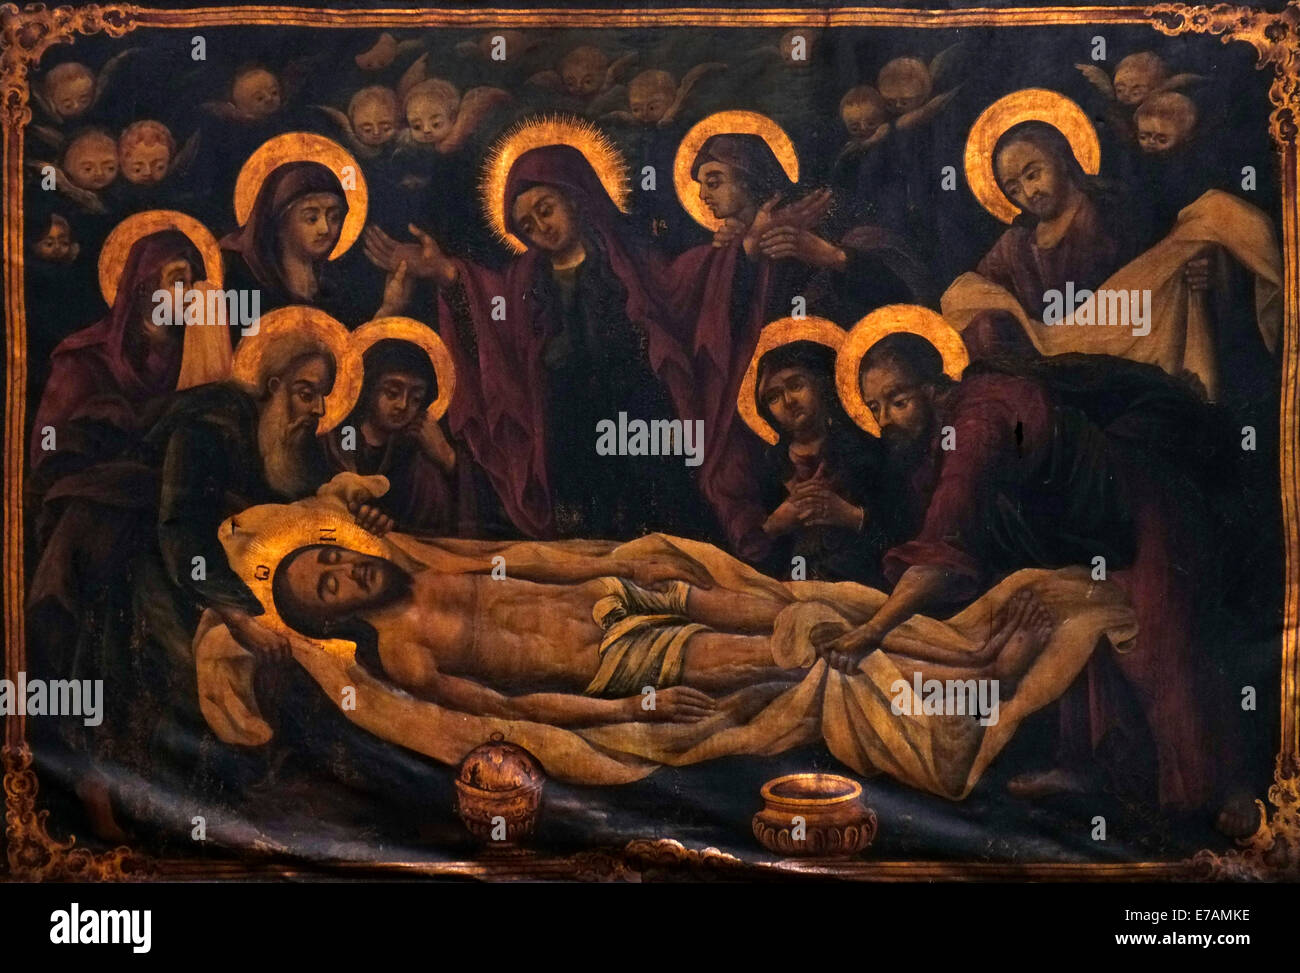 Peinture représentant Jésus Christ corps se prépare à l'intérieur du pendu après Crucifixion Katholikon Catholicon ou Chapelle dans l'église du Saint-Sépulcre, dans la vieille ville de Jérusalem Israël Banque D'Images